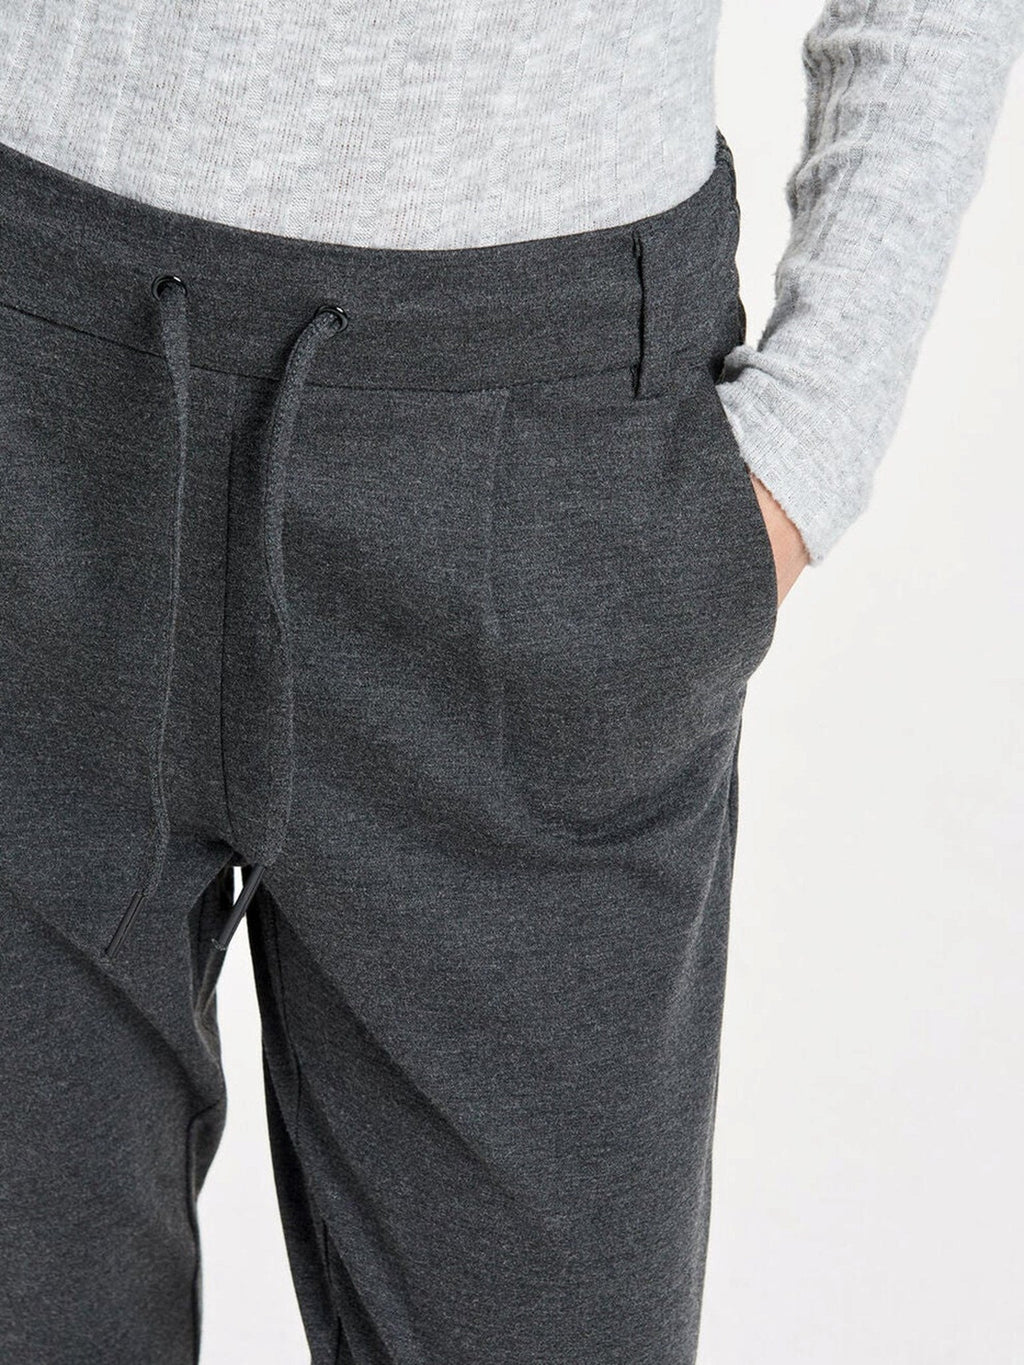 Pantaloni poptrash - grigio scuro